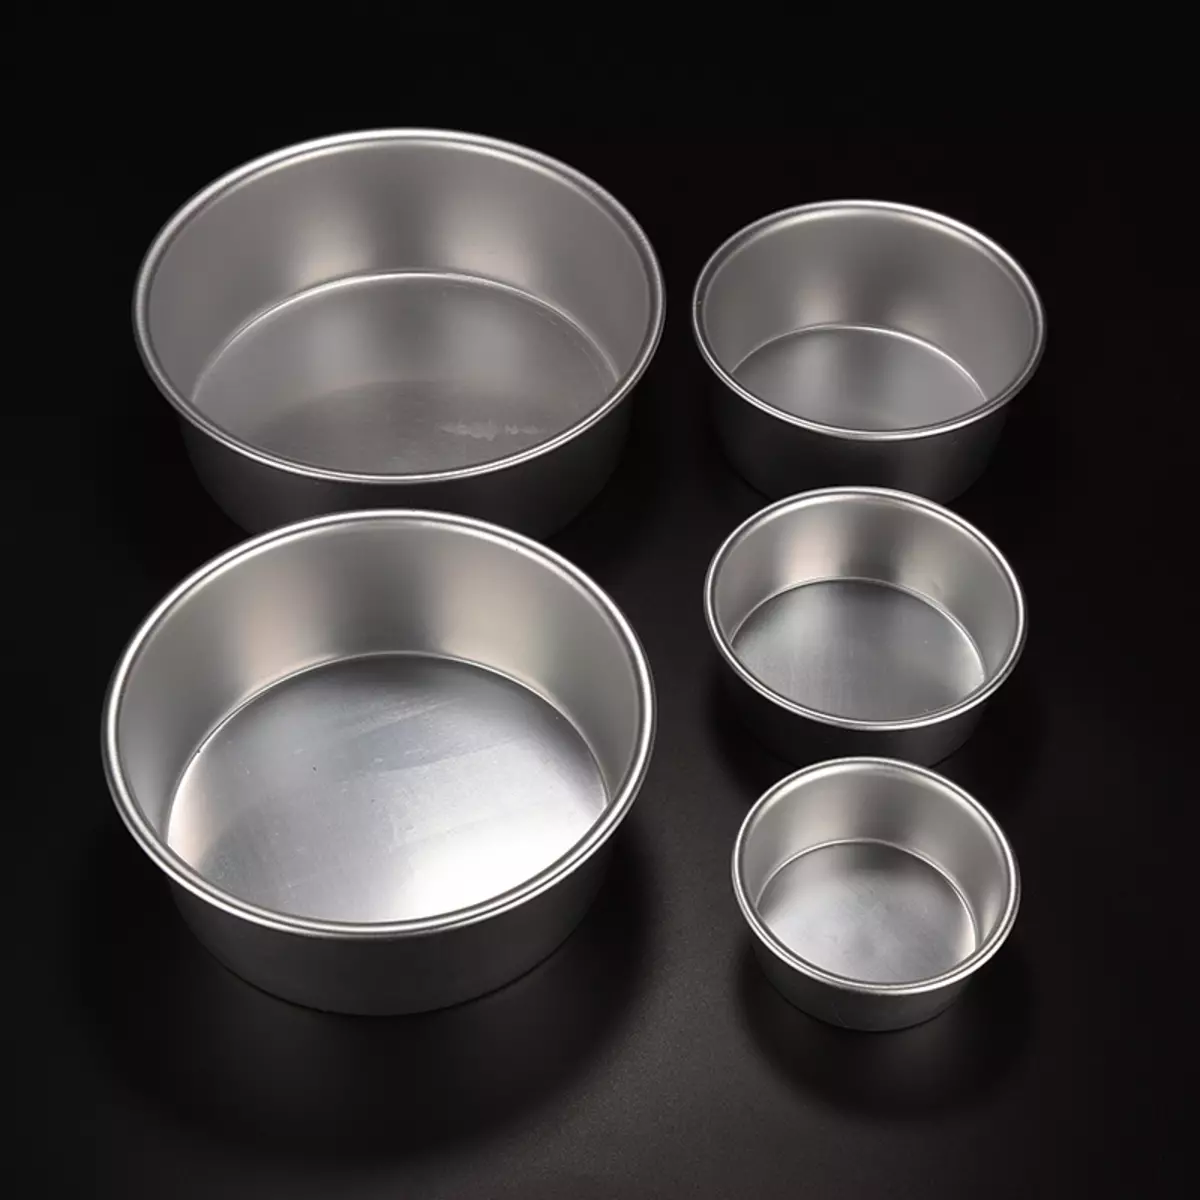 Dishes aluminium (30 wêne): feydeyê û zirarê bide xwarinên golê yên tenduristiyê. Meriv çawa li malê reş paqij e? Whyima nekare çareseriyên alkaline hilîne? 10791_26